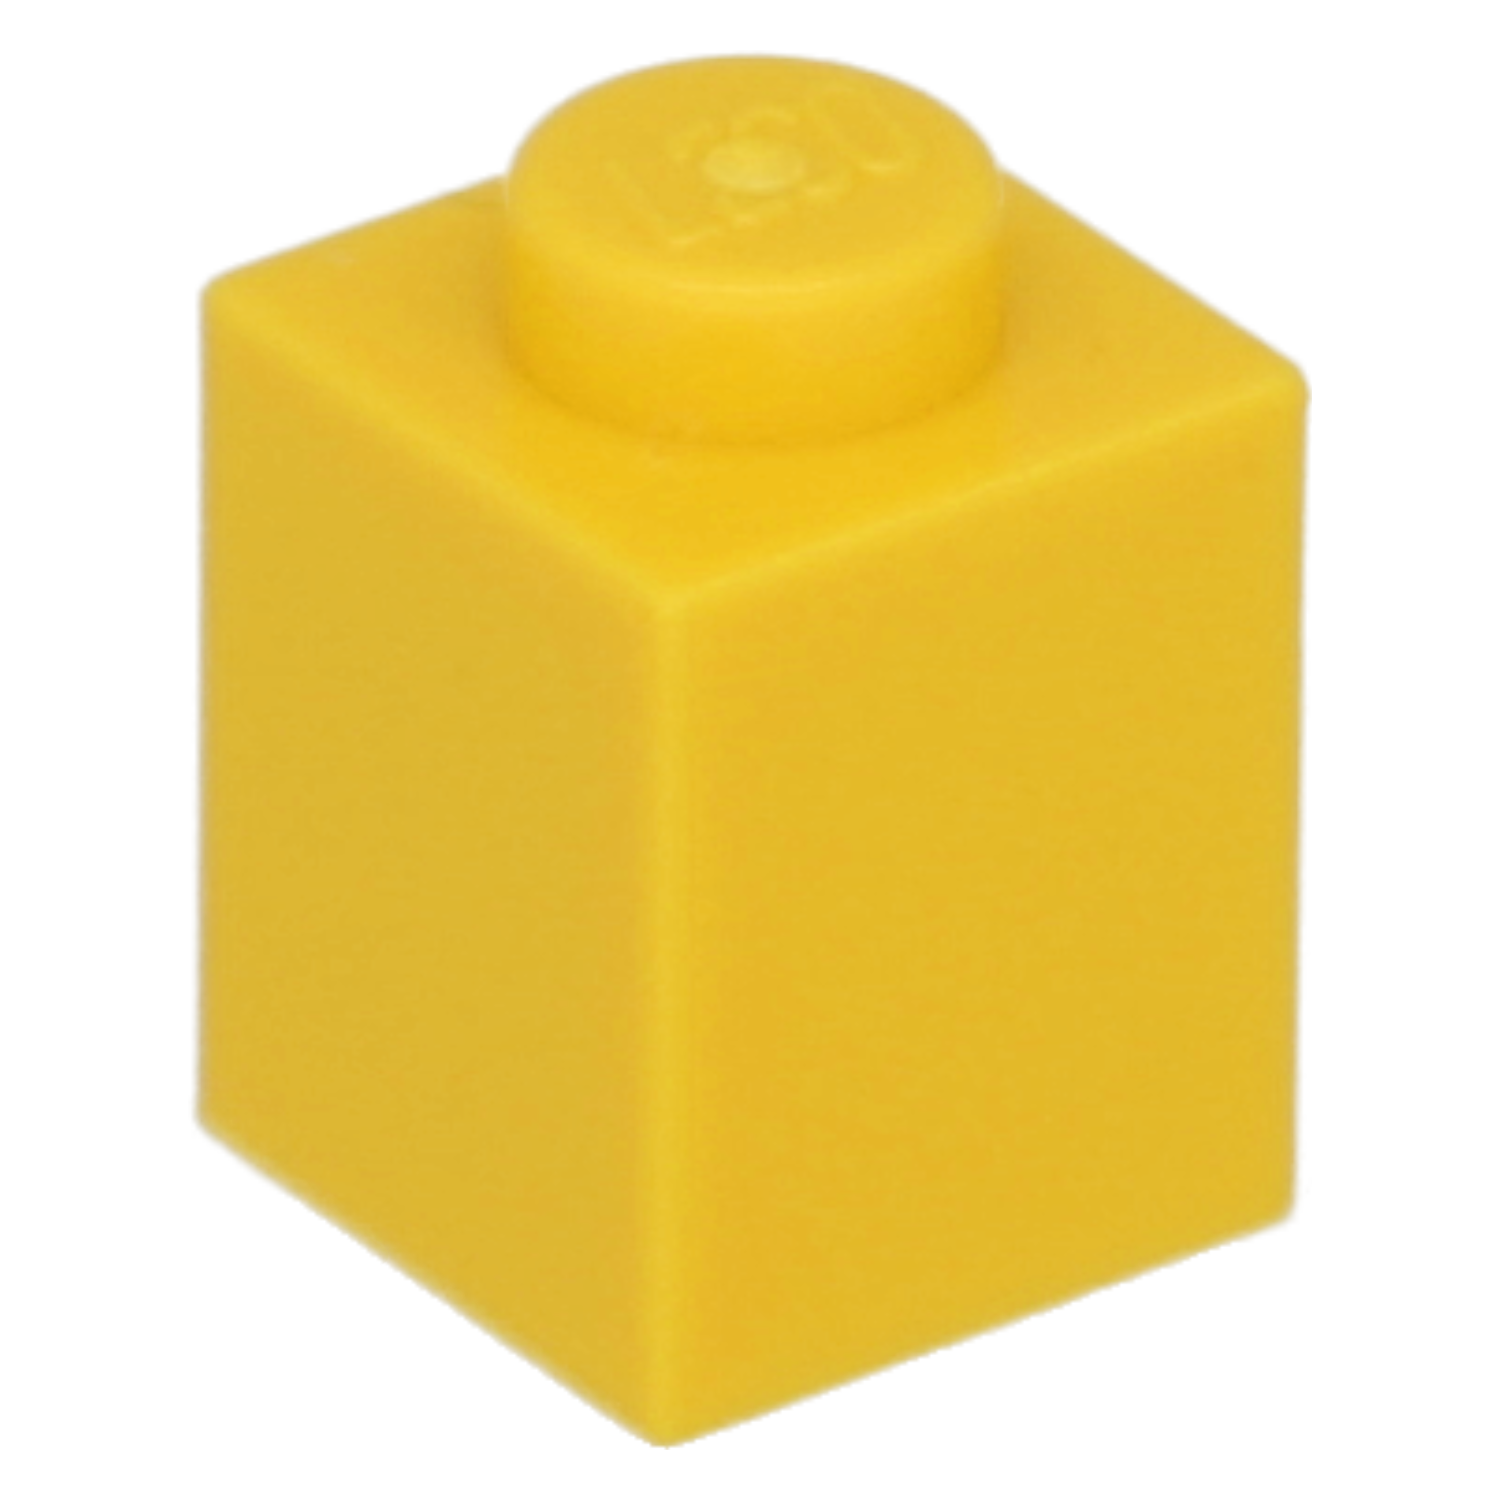 LEGO Steine (standard) - 1 x 1